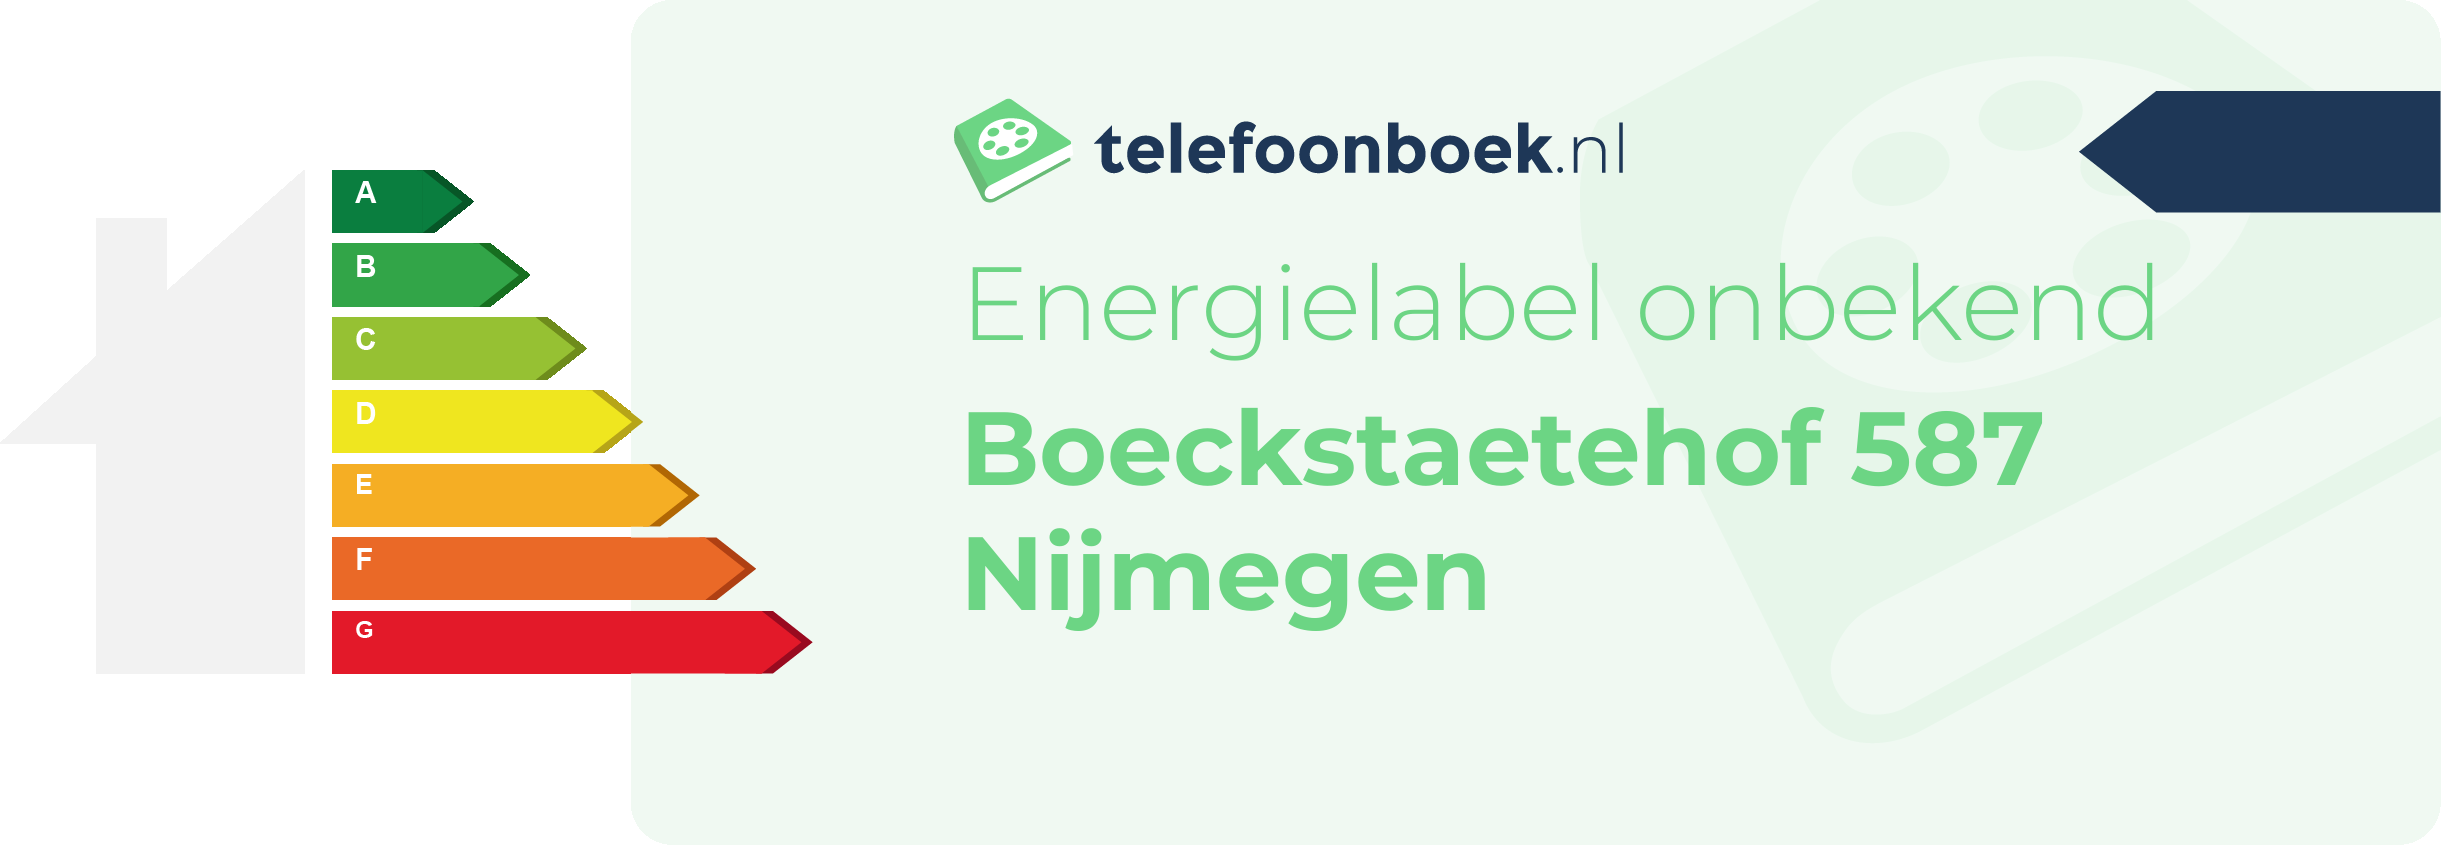 Energielabel Boeckstaetehof 587 Nijmegen